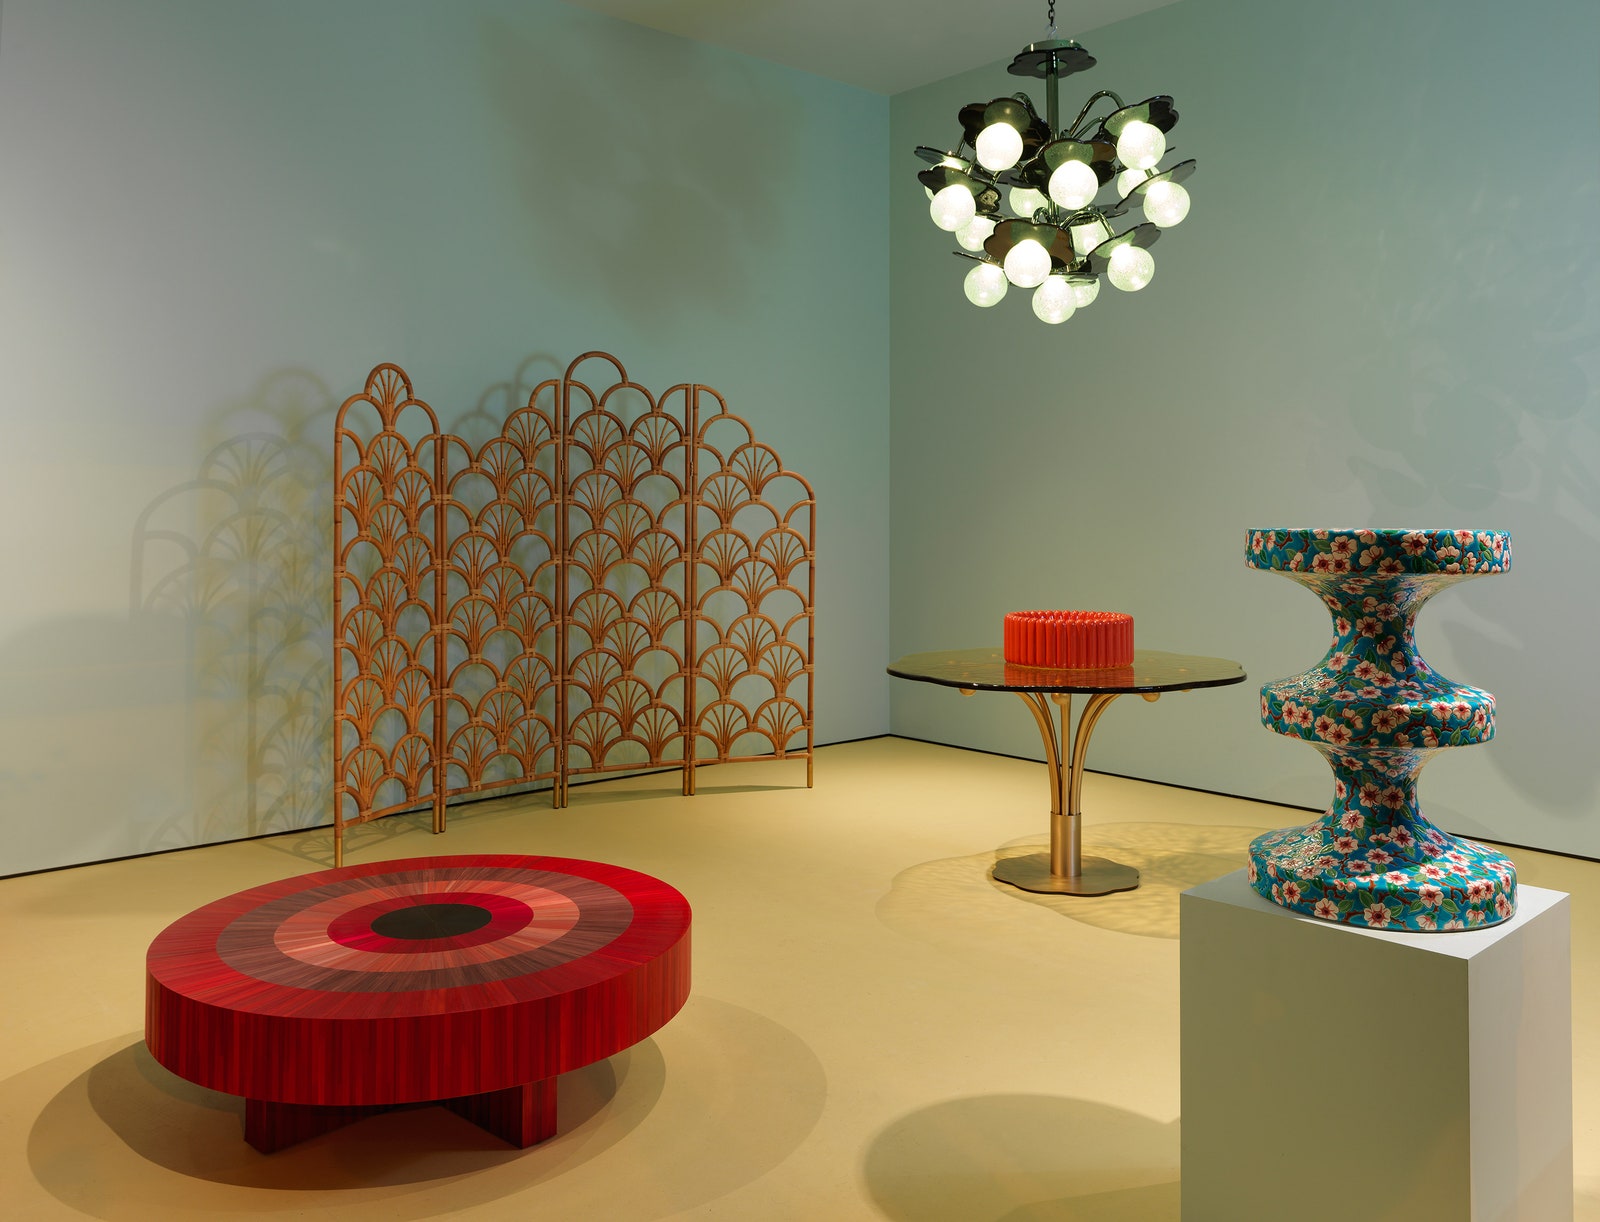 Индиа Мадави открыла новое выставочное пространство в Париже